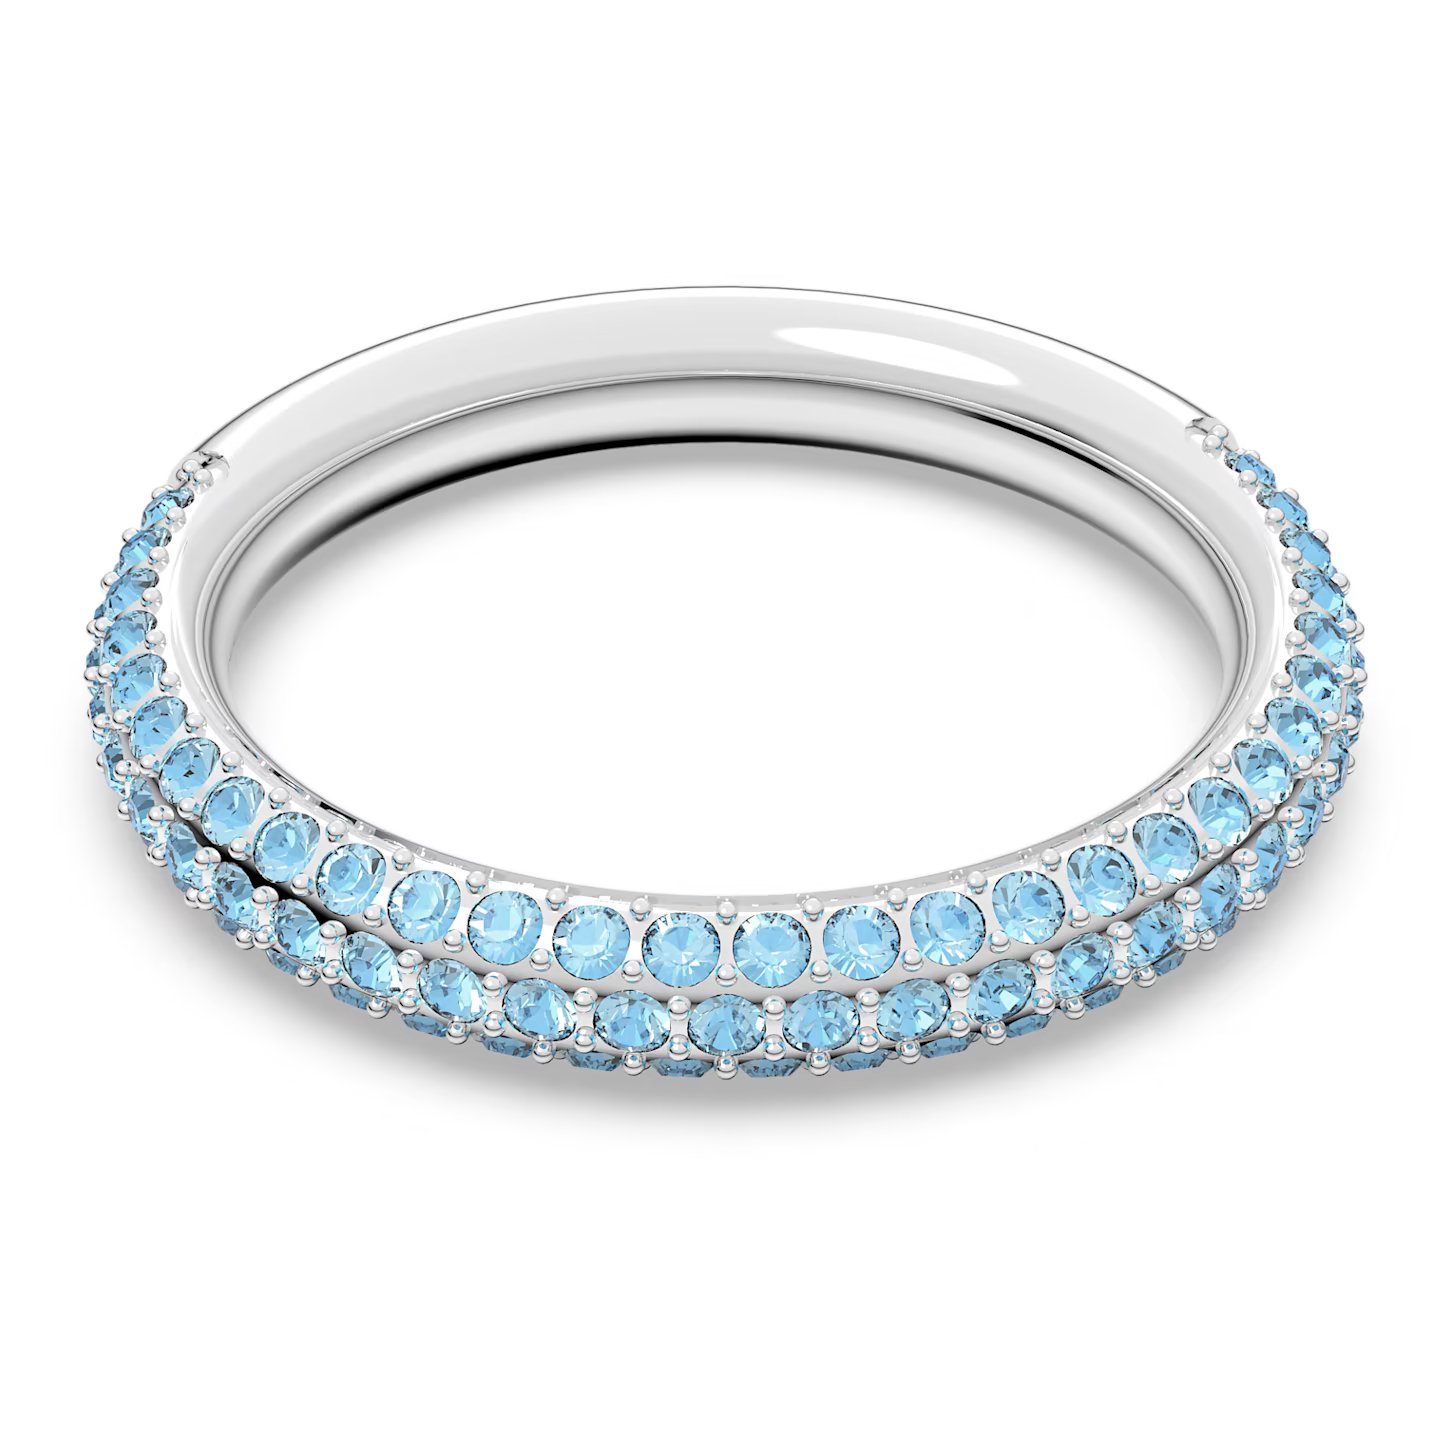 Swarovski -  Nádherný prsten s modrými krystaly Swarovski -  Stone 5642903 60 mm